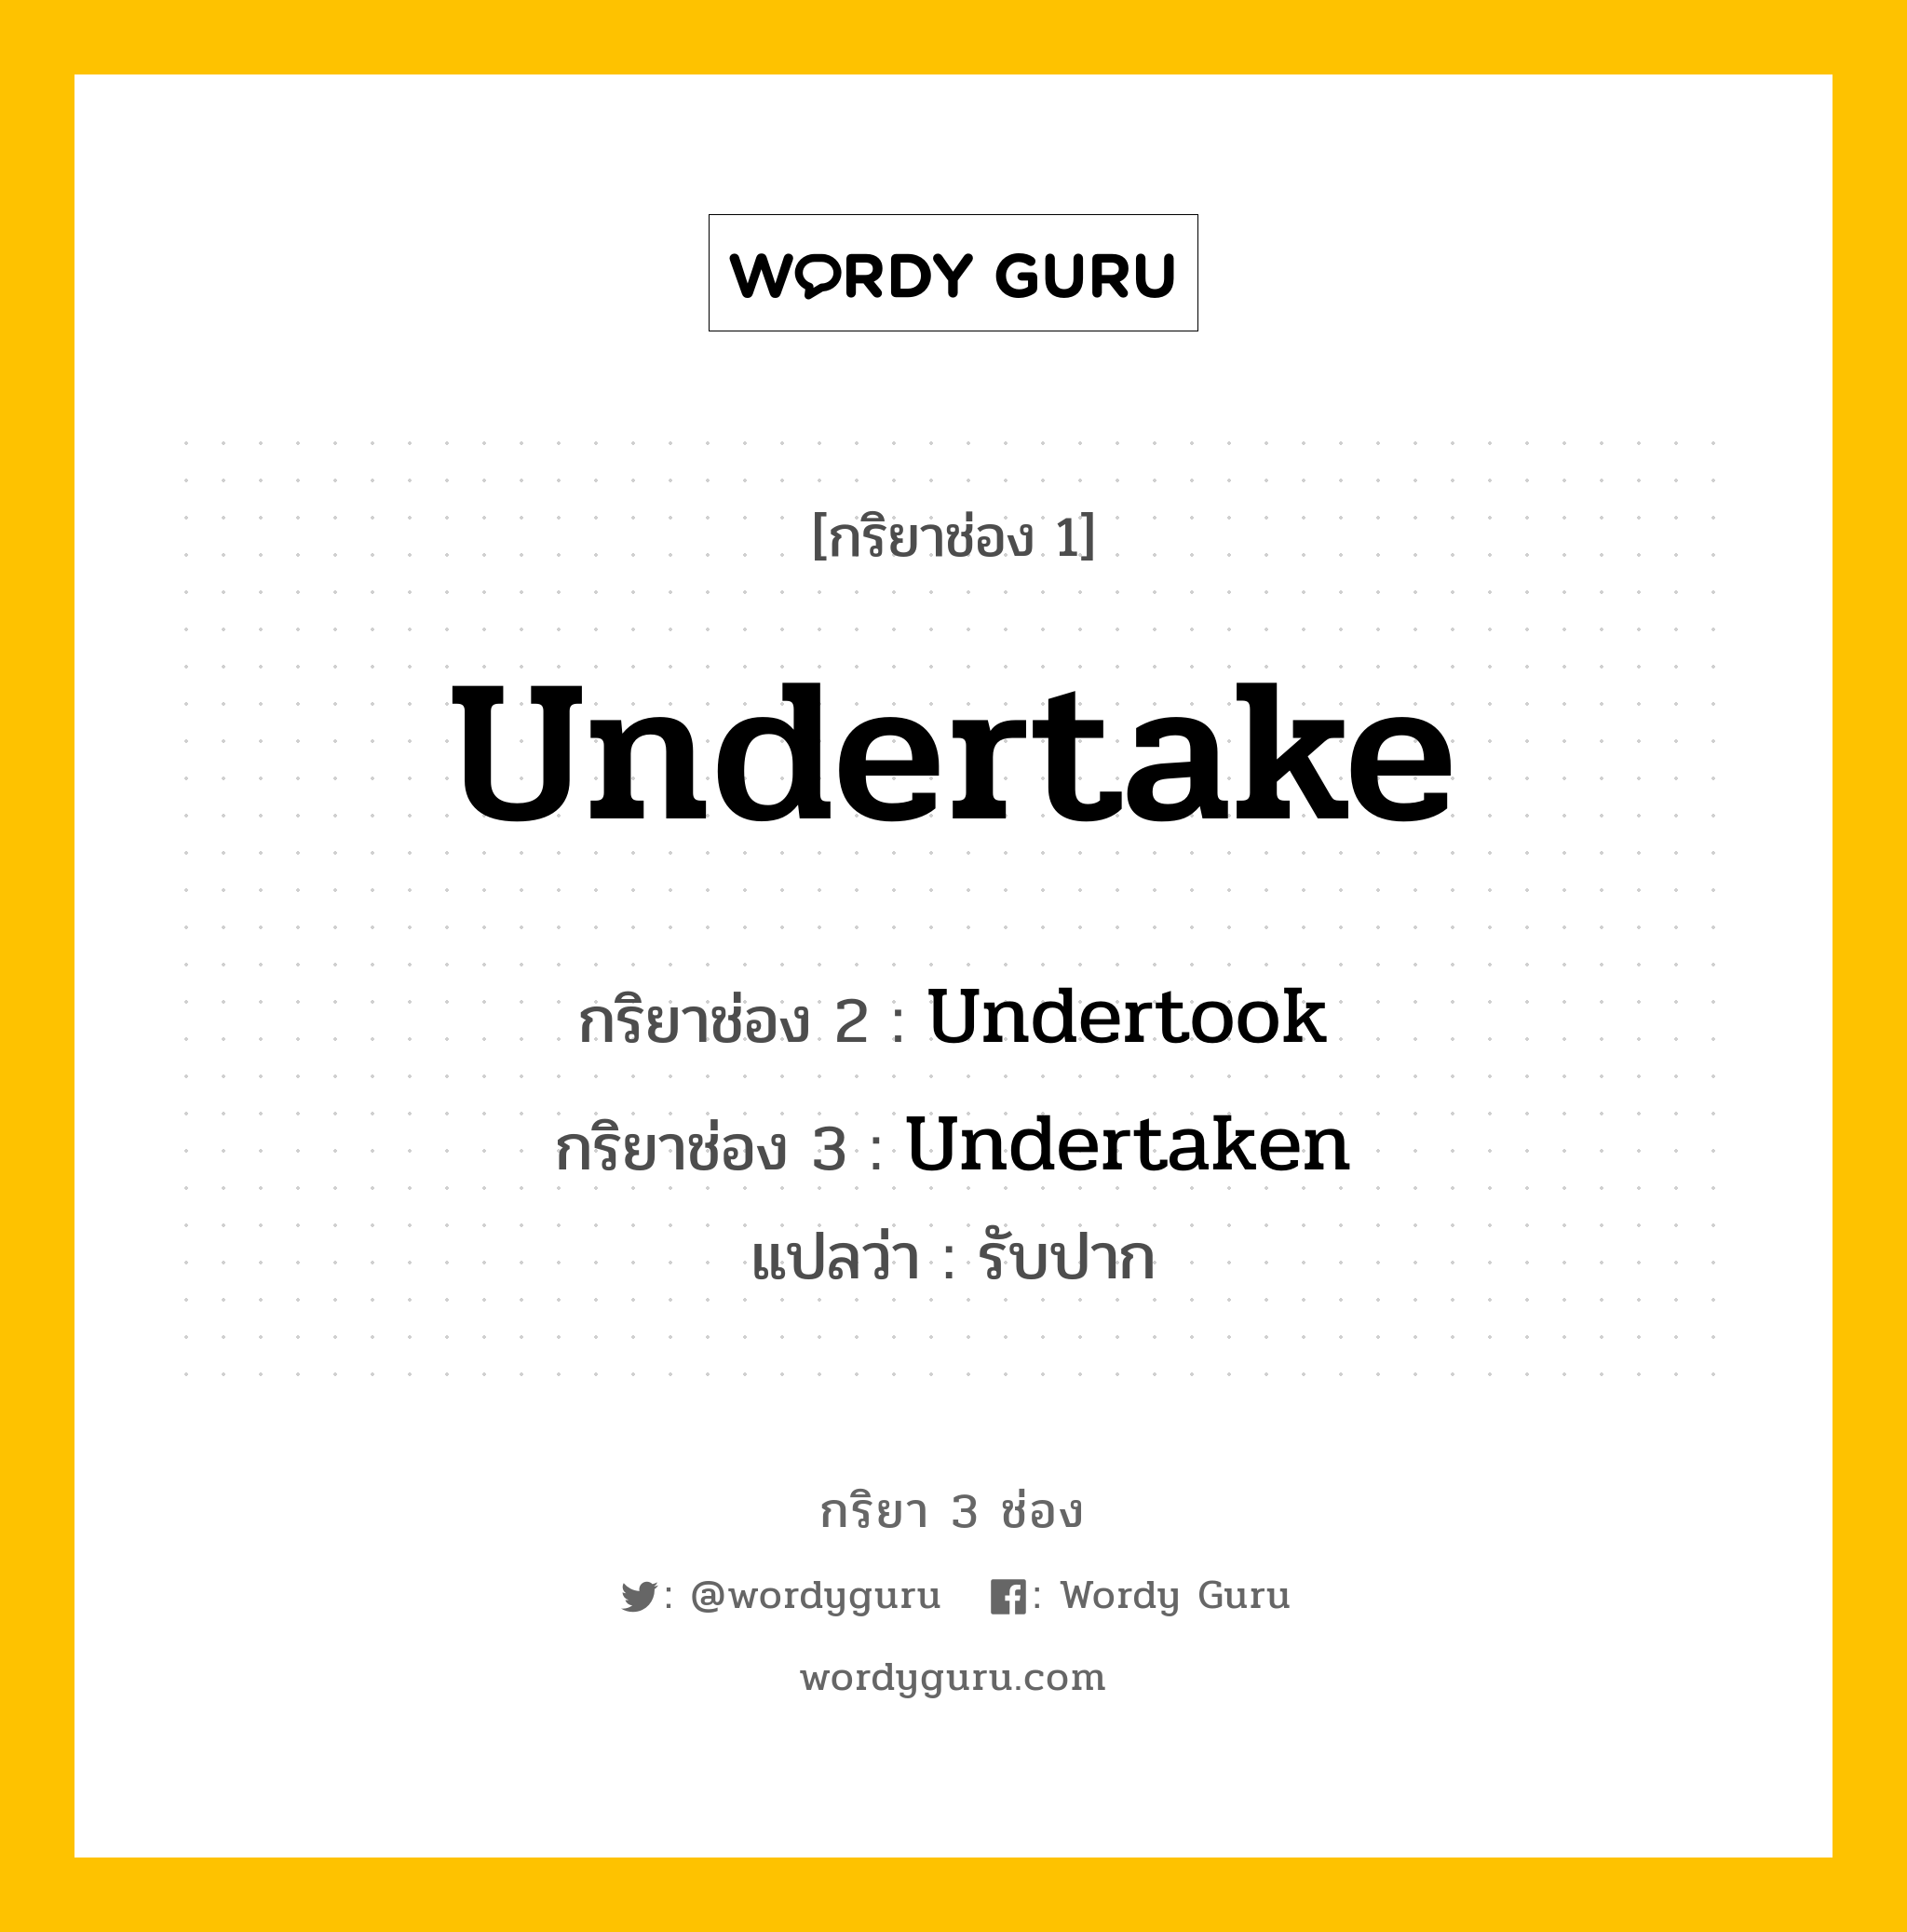 กริยา 3 ช่อง: Undertake ช่อง 2 Undertake ช่อง 3 คืออะไร, กริยาช่อง 1 Undertake กริยาช่อง 2 Undertook กริยาช่อง 3 Undertaken แปลว่า รับปาก หมวด Irregular Verb